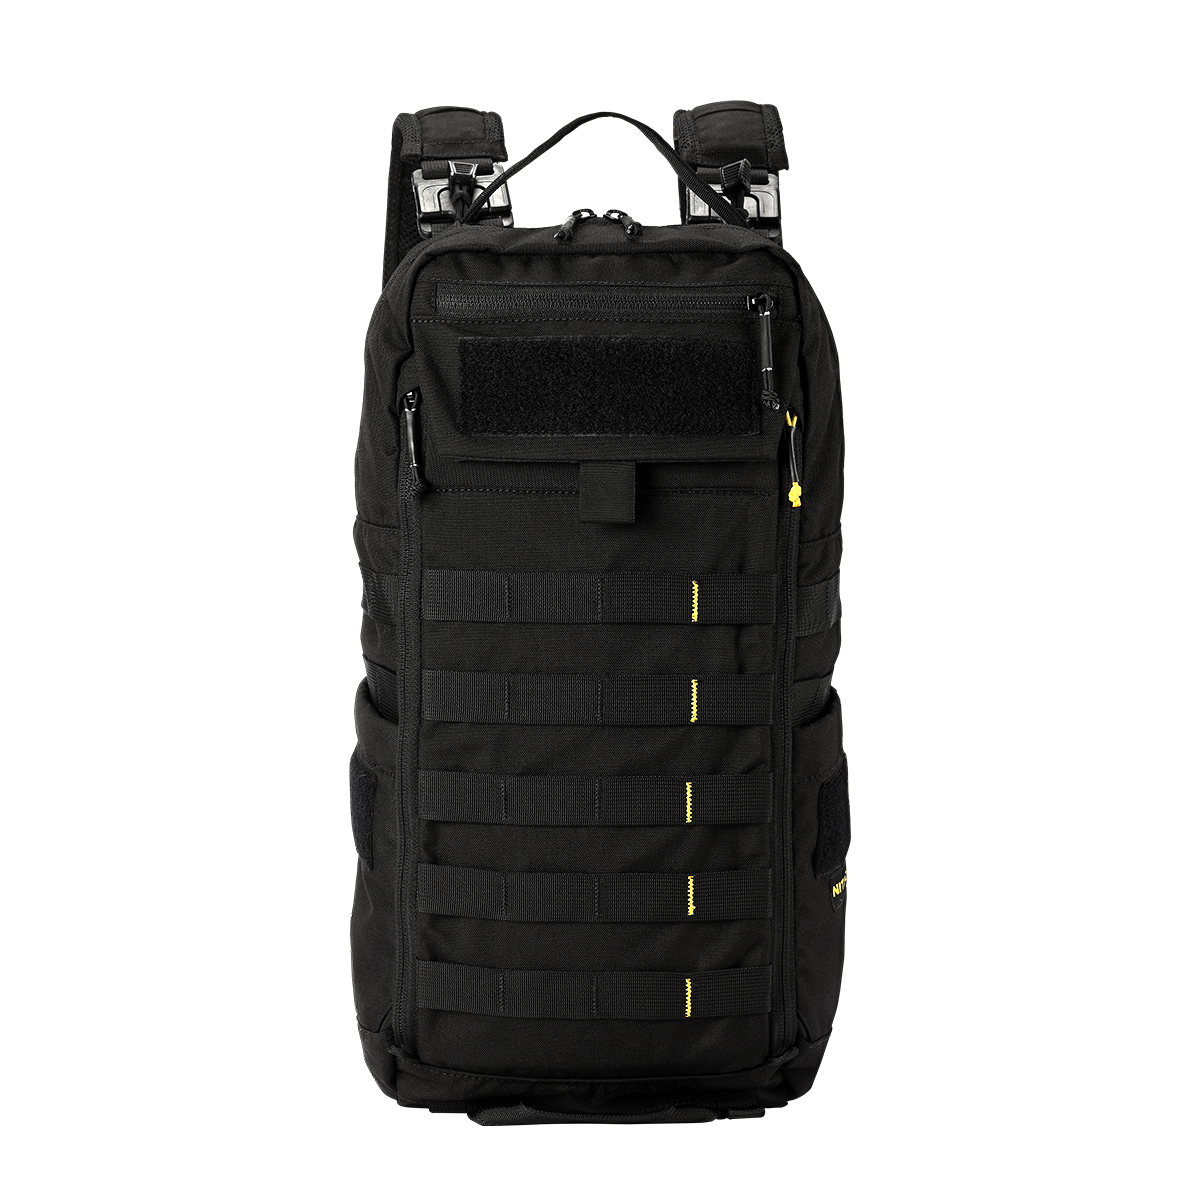 BP18 Modular Backpack - 18L Capacity